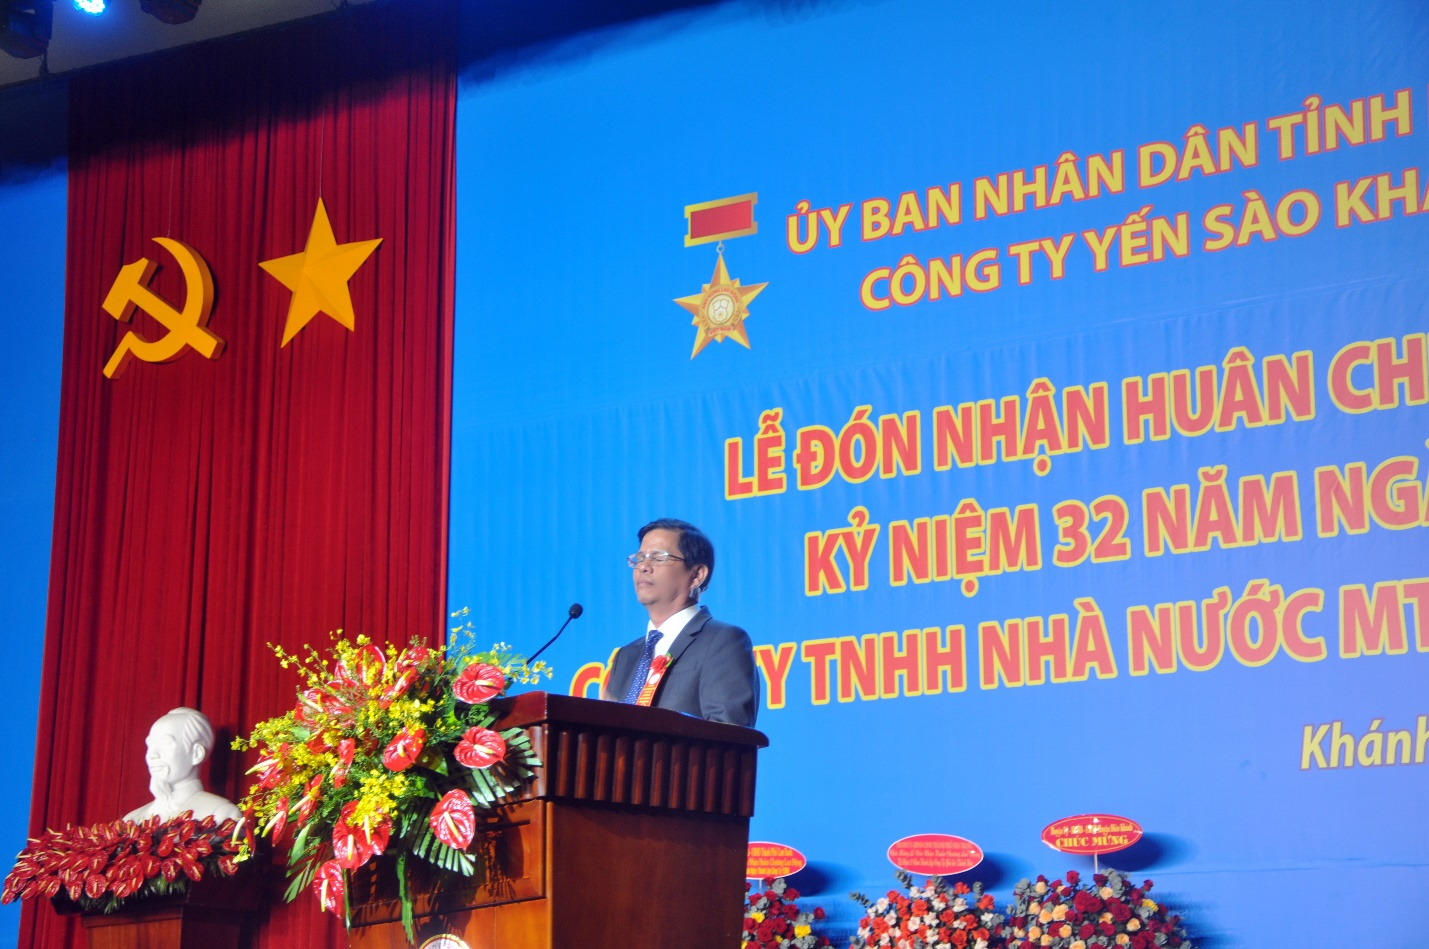  Ông Nguyễn Tấn Tuân - Phó Bí thư Tỉnh ủy, Chủ tịch UBND tỉnh Khánh Hòa phát biểu tại Lễ Kỷ niệm